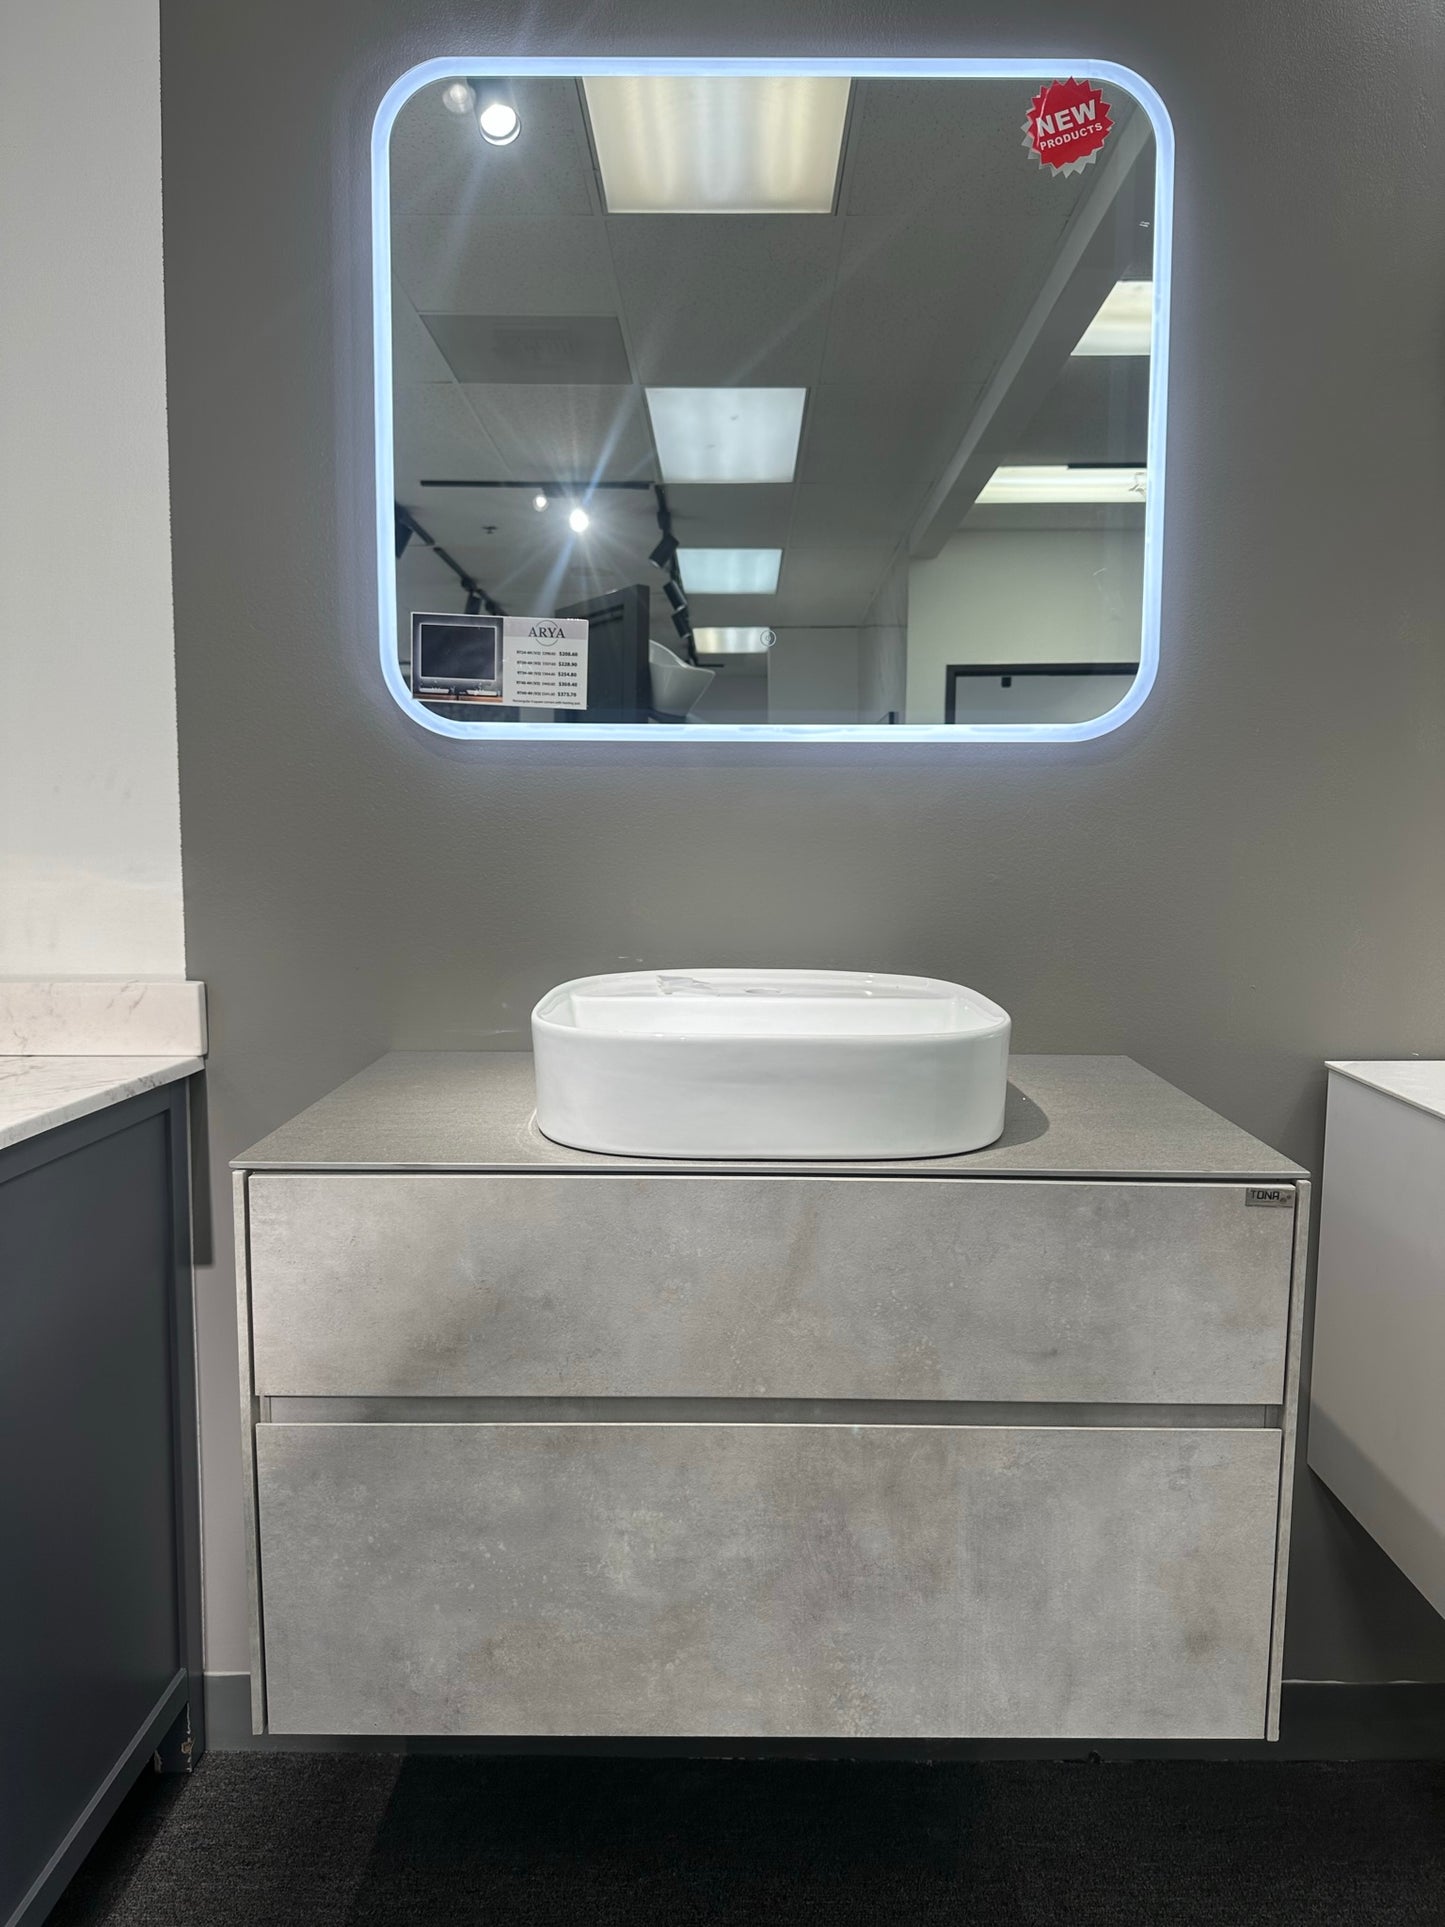 Limestone 48" Wall Mounted Bathroom Vanity with Reinforced Acrylic Sink